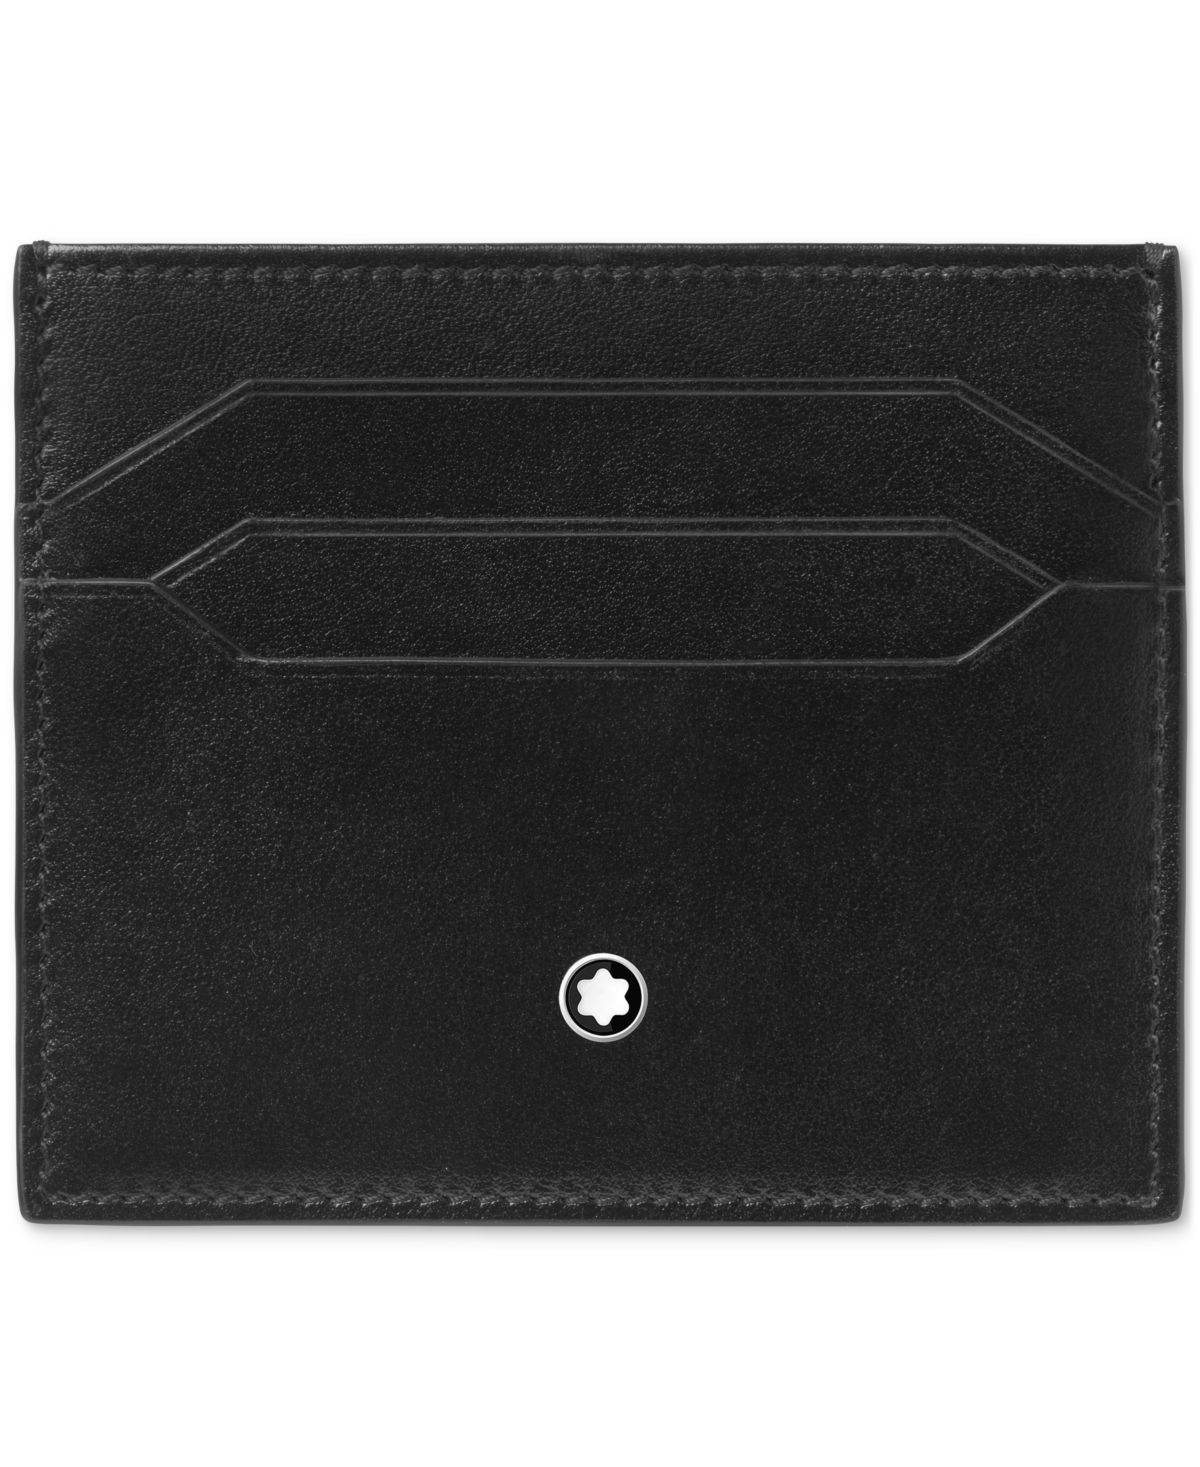 Meisterstuck Leather Card Holder - Black